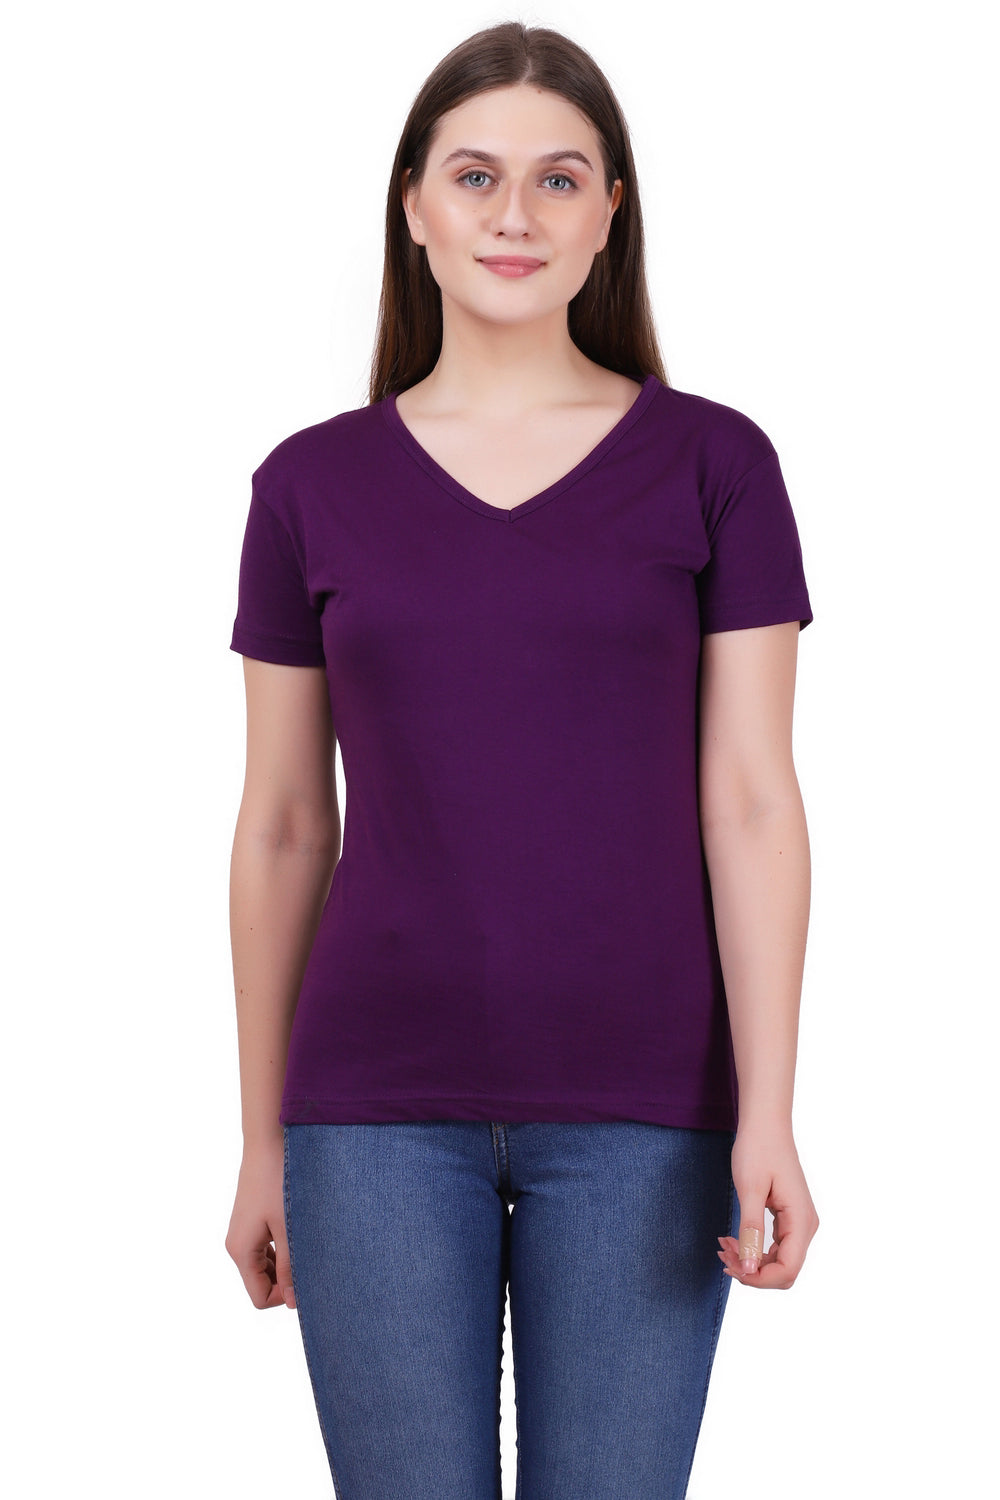 Women's Cotton Plain V Neck Half Sleeve Purple Color T-Shirt